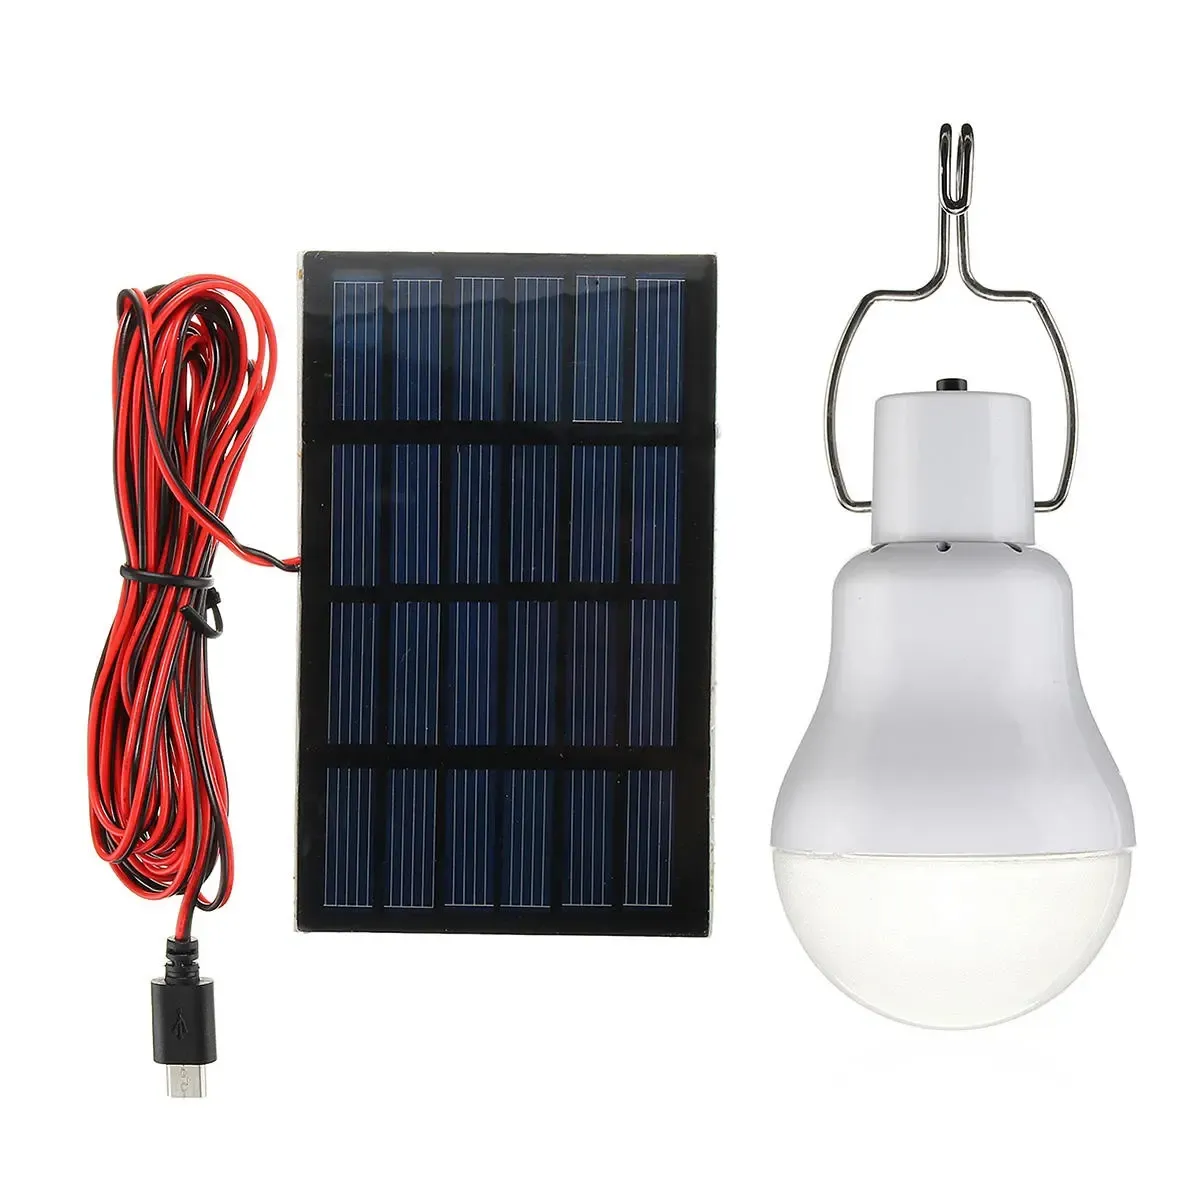 Bombilla LED alimentada por Panel Solar de 5V y 1W, lámpara de energía portátil para tienda de campaña al aire libre, también puede cargar la batería con un cargador de 5-8V